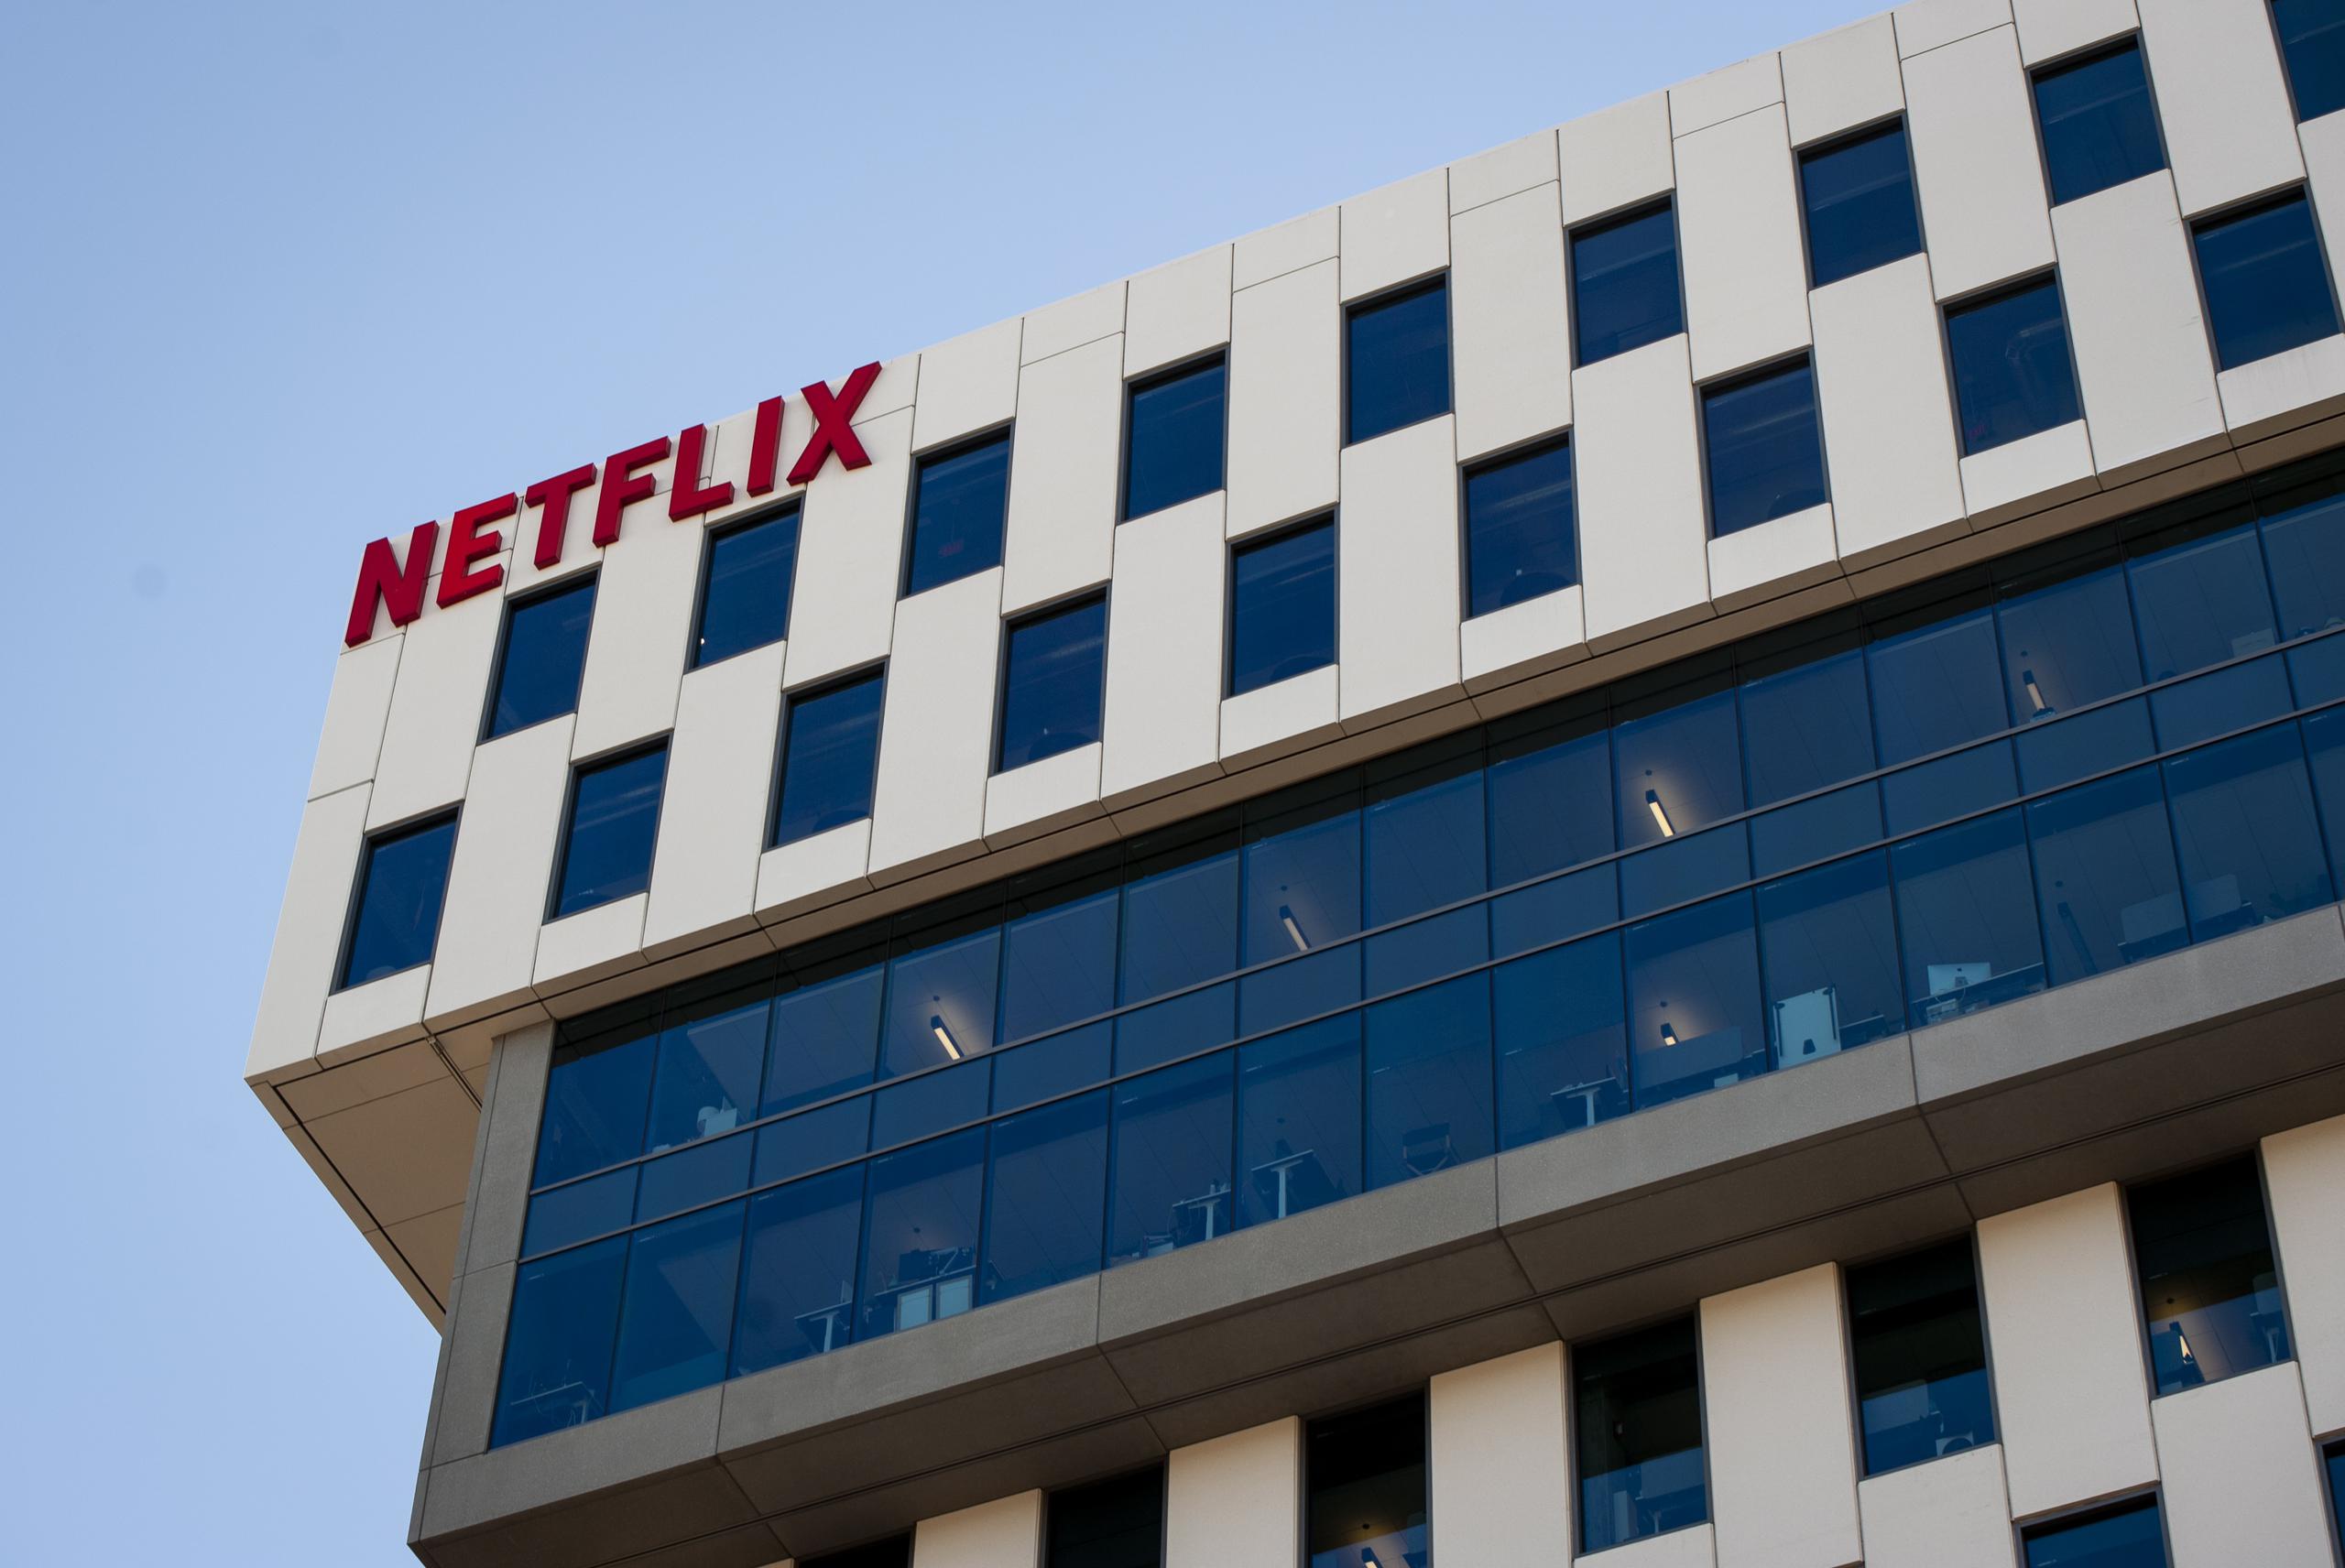 Netflix anunció hace unos días un nuevo modelo de suscripción mensual que incluye anuncios a cambio de reducir su precio y retener a una base de clientes que supera los 227 millones de abonados.